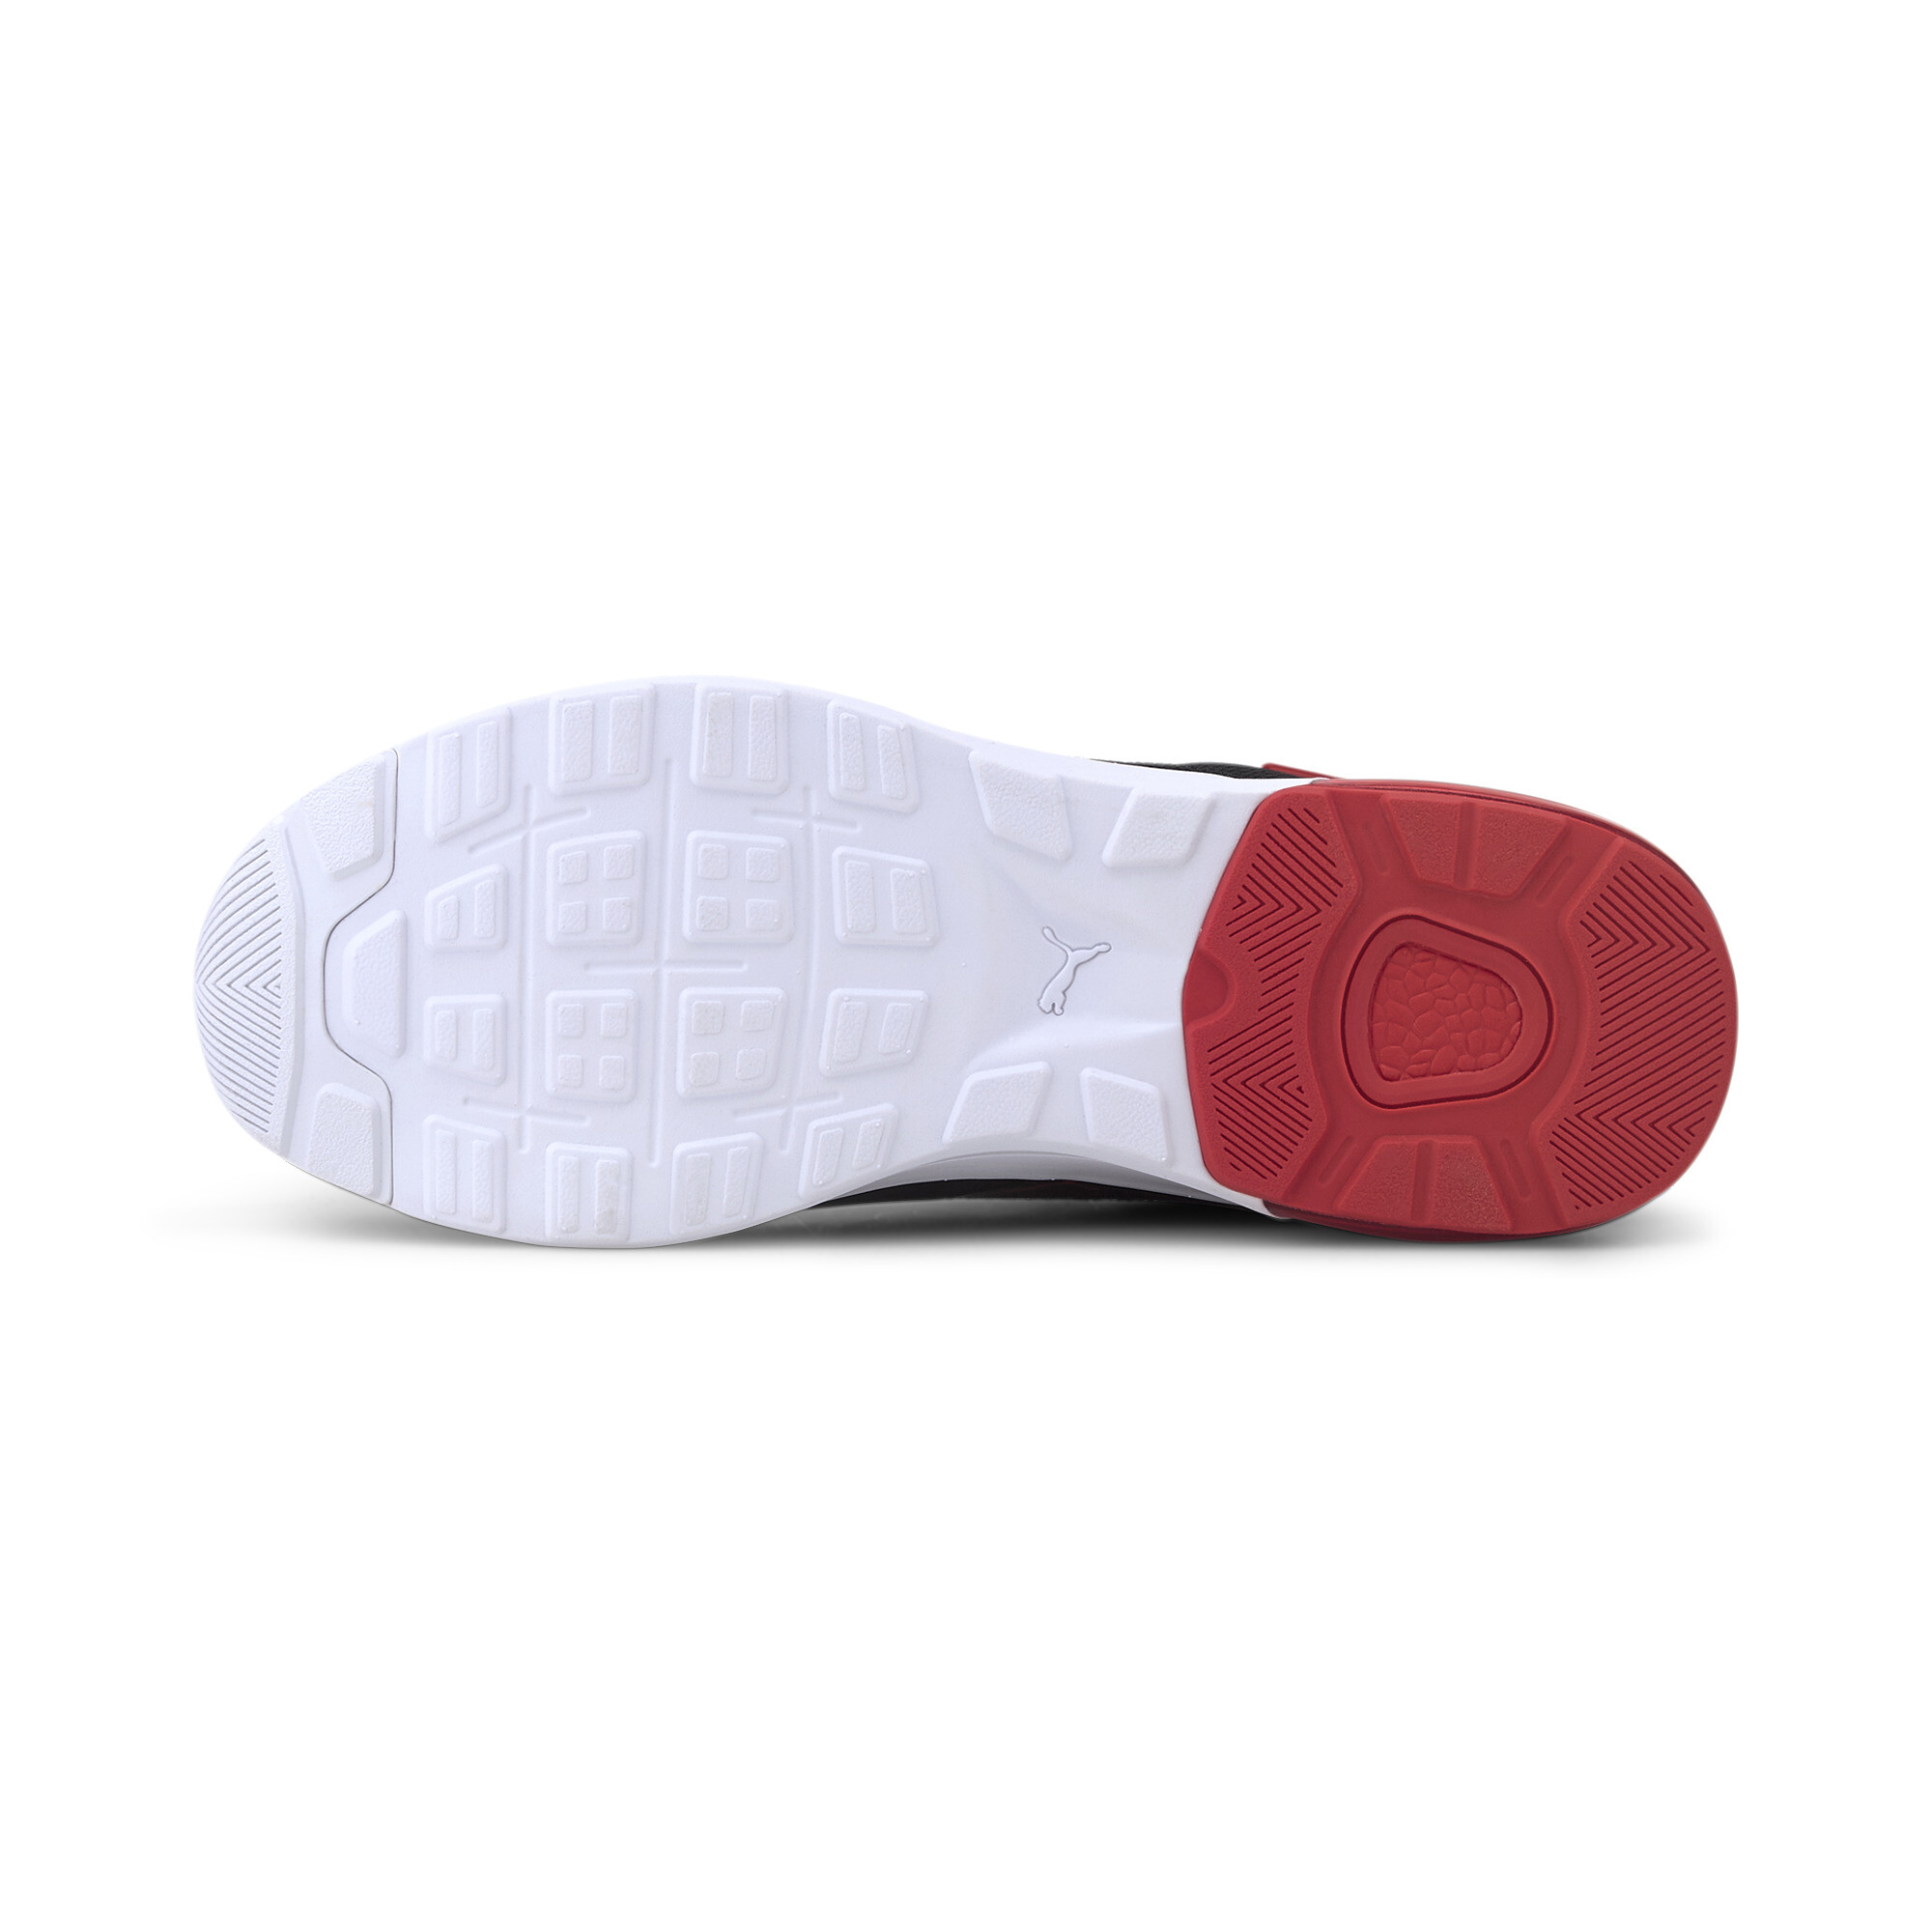 Indexbild 5 - PUMA Electron Street Era Sneaker Unisex Schuhe Basics Neu